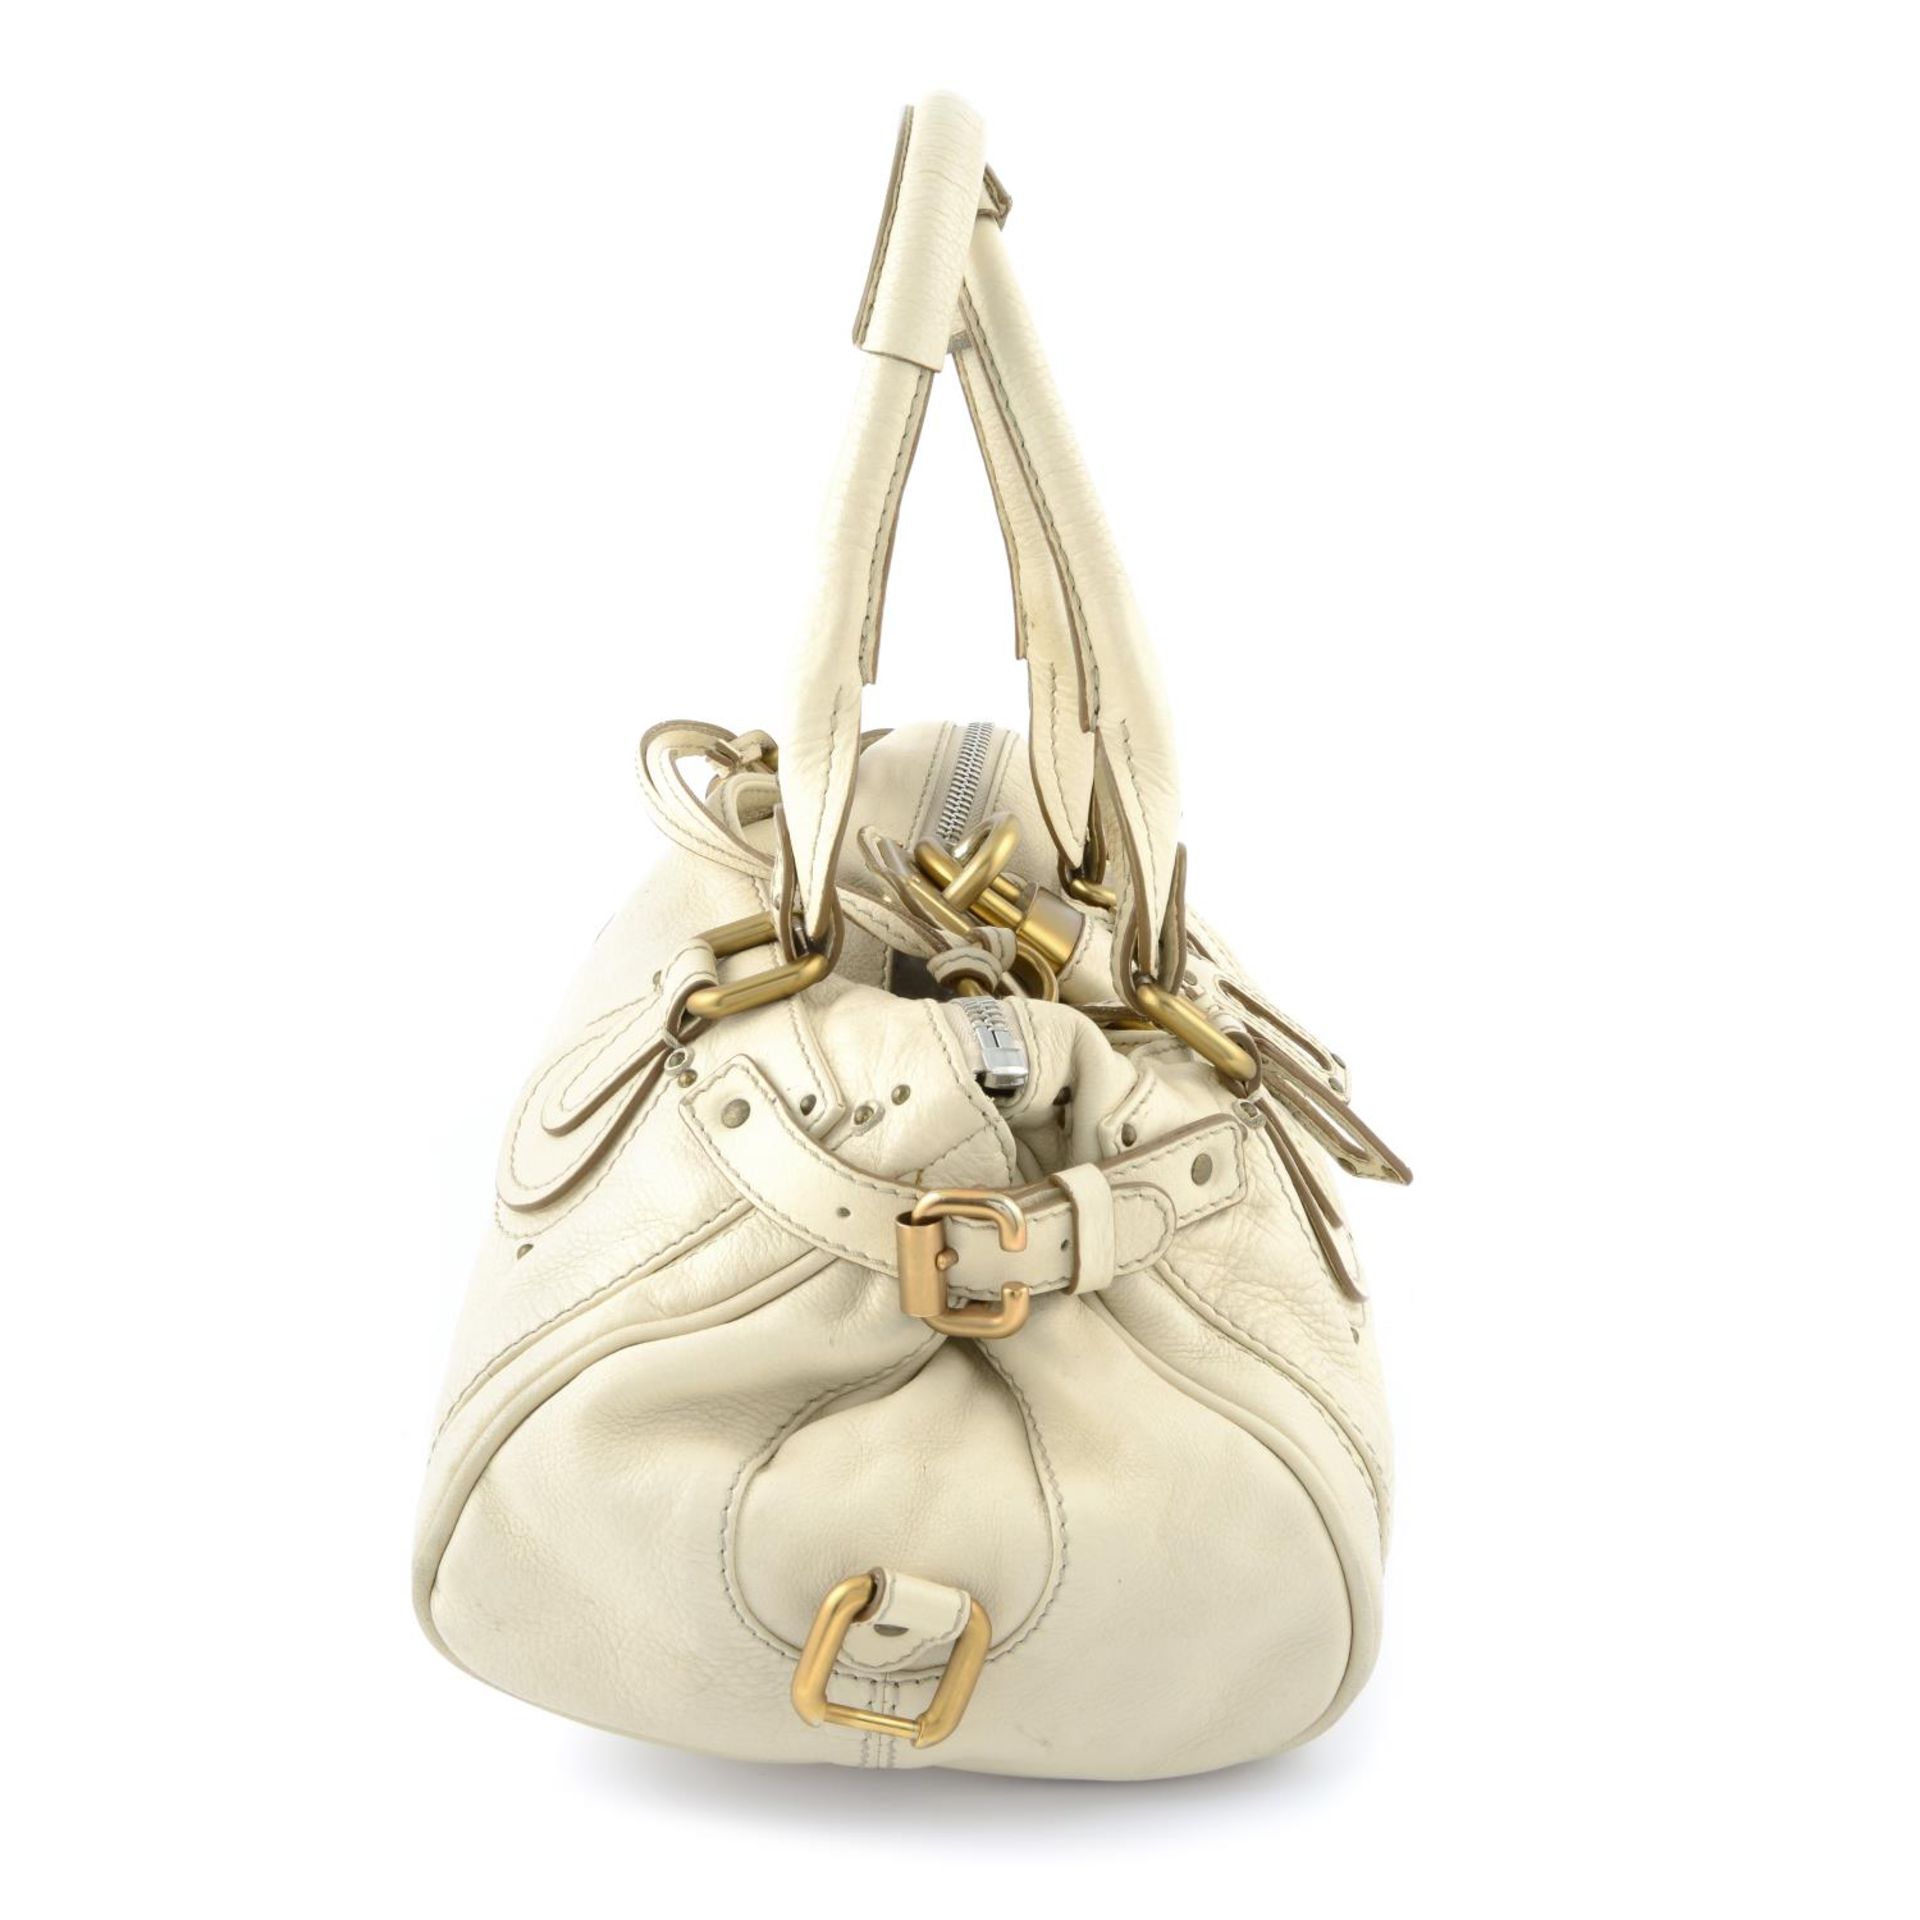 CHLOÉ - a cream Paddington handbag. - Image 3 of 5